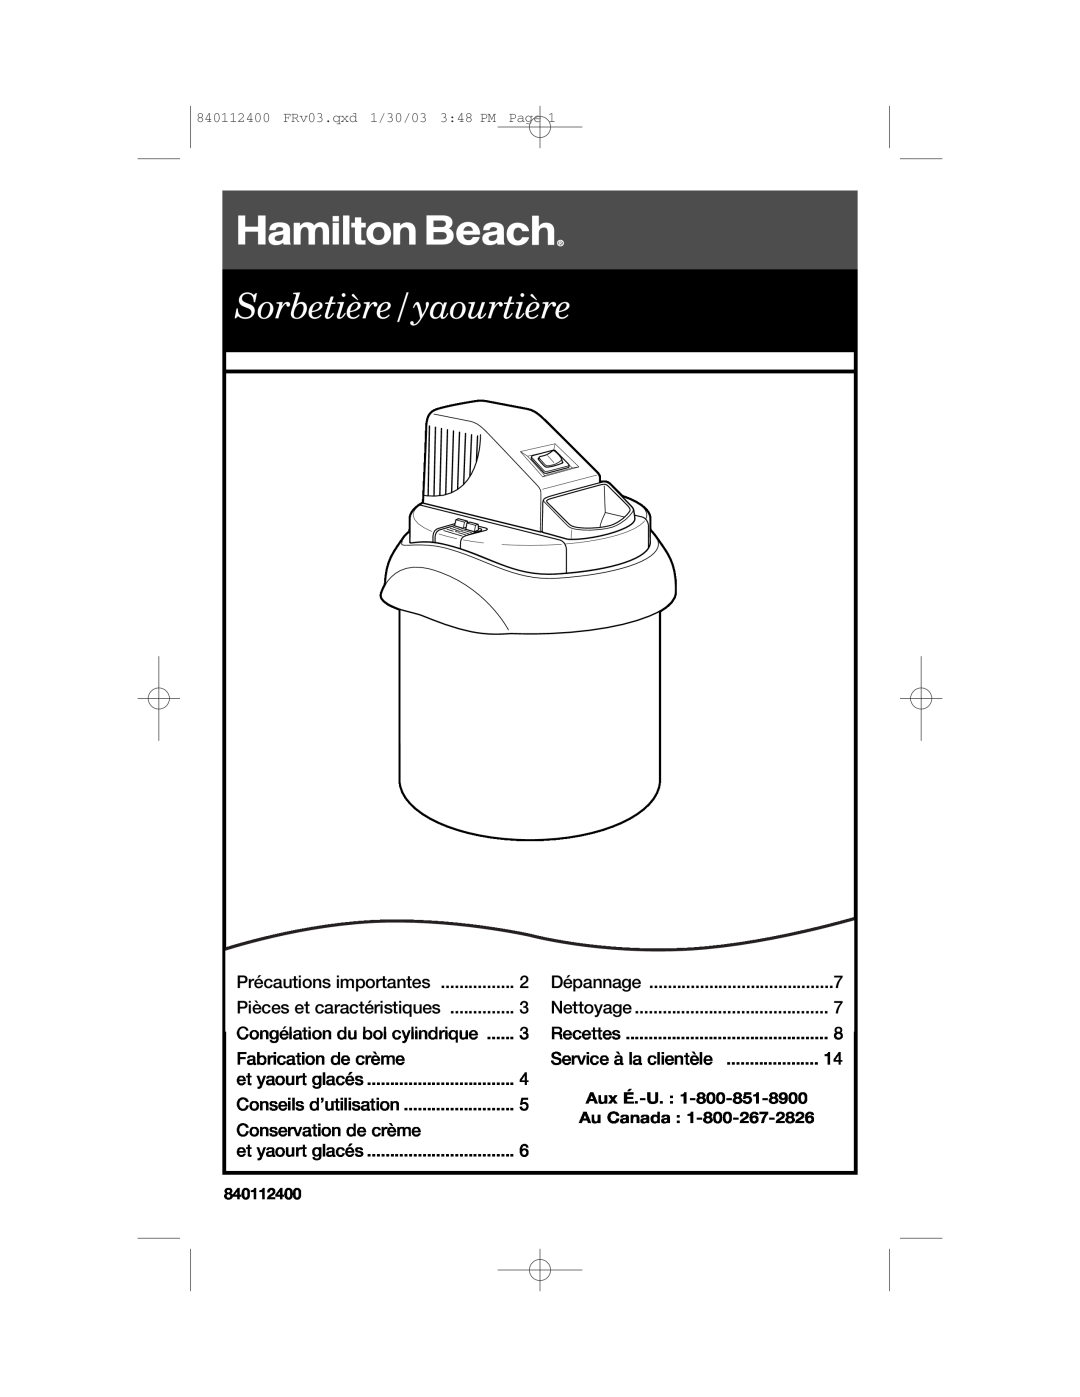 Hamilton Beach 68120 manual Sorbetière/yaourtière, Dépannage, Nettoyage, Recettes, et yaourt glacés, Aux É.-U, Au Canada 